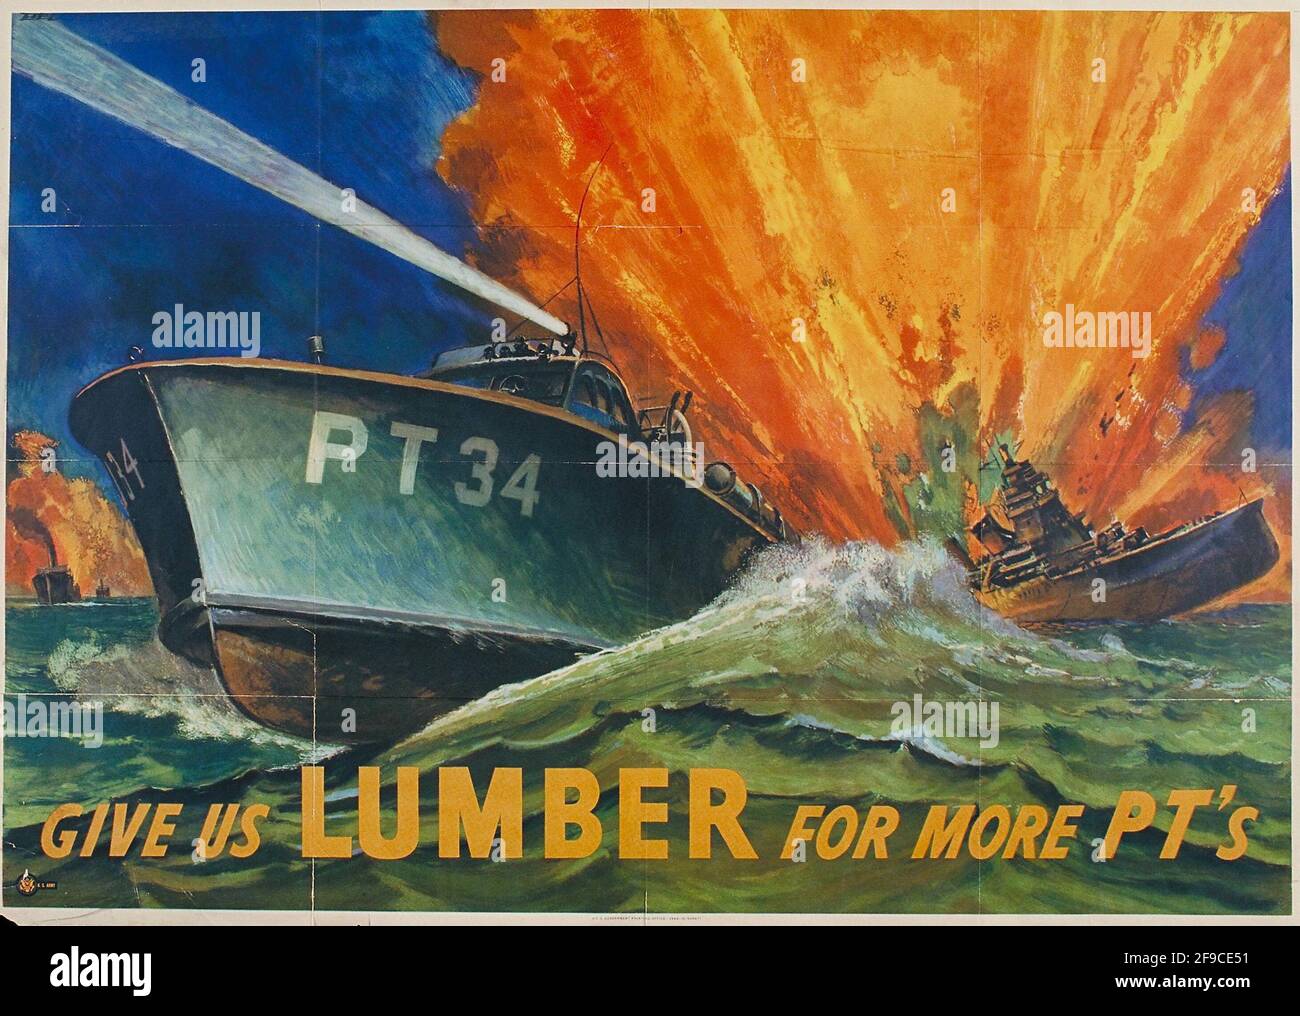 Une affiche de la WW2 américaine sur l'augmentation de la production de bois d'œuvre dans le effort de guerre Banque D'Images